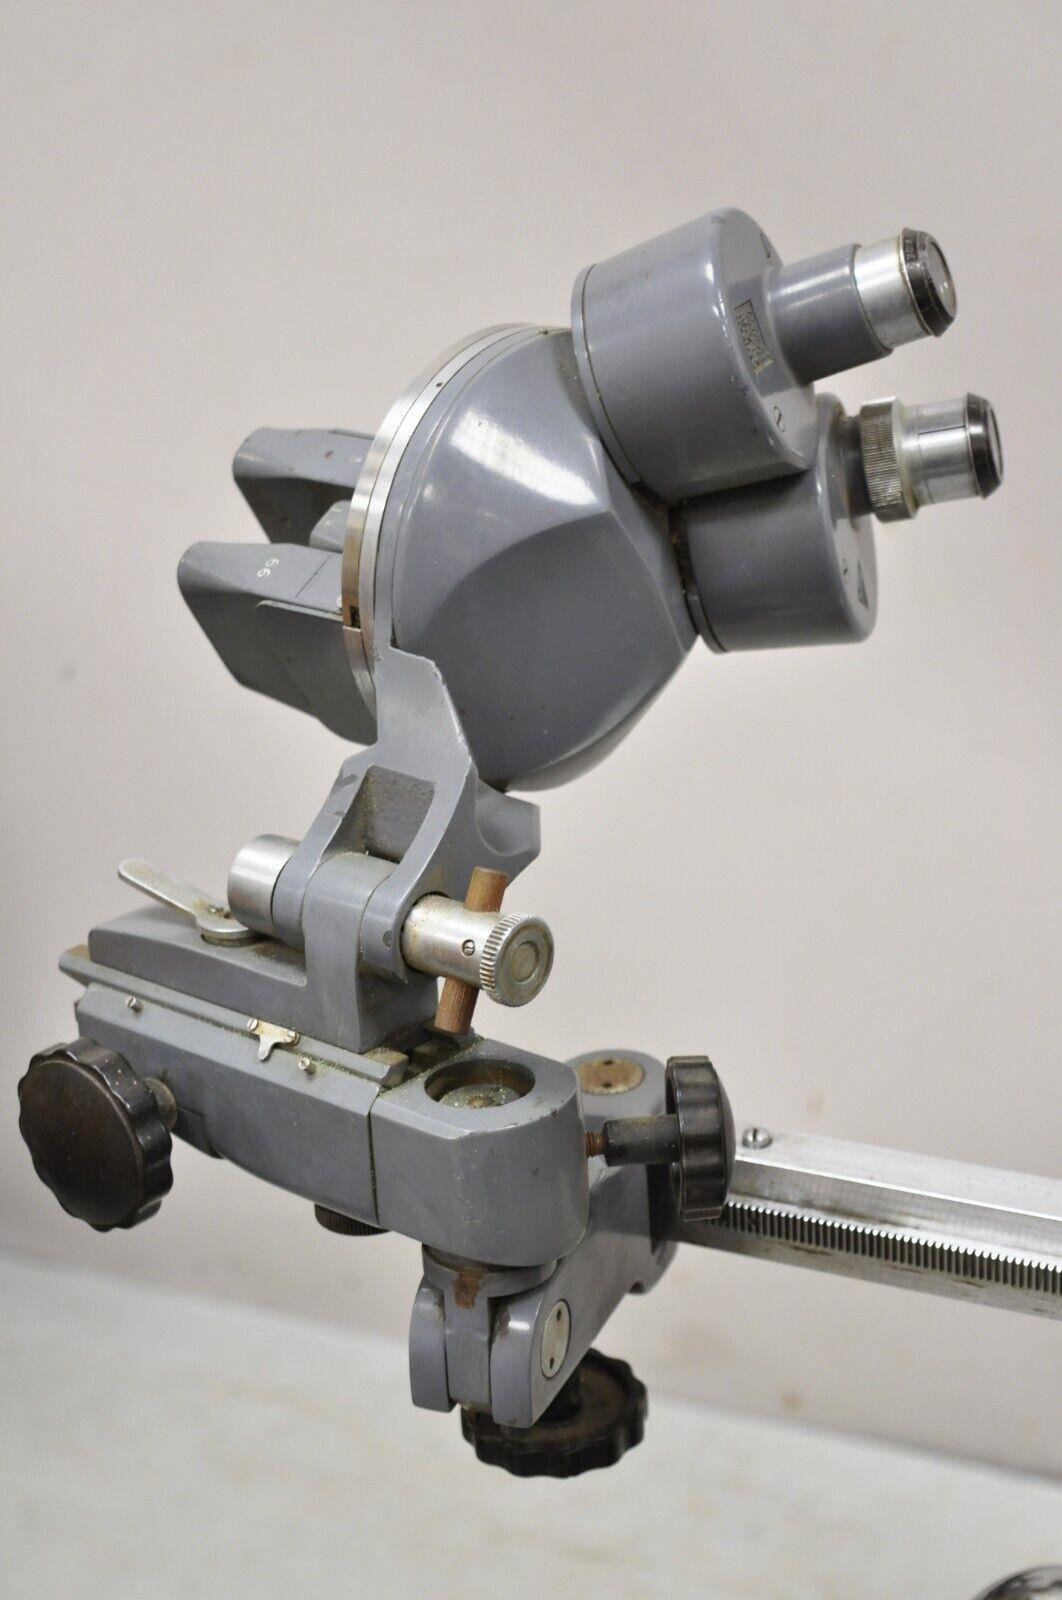 Vintage Bausch & Lomb Optical XD 7489 Medical Supply Test. Der Artikel enthält ein optisches Gerät von Bausch & Lomb. Wir wissen nicht genau, wofür es verwendet wird oder was es bewirken soll. Ca. 85 lbs. CIRCA  Ende des 20. Jahrhunderts.